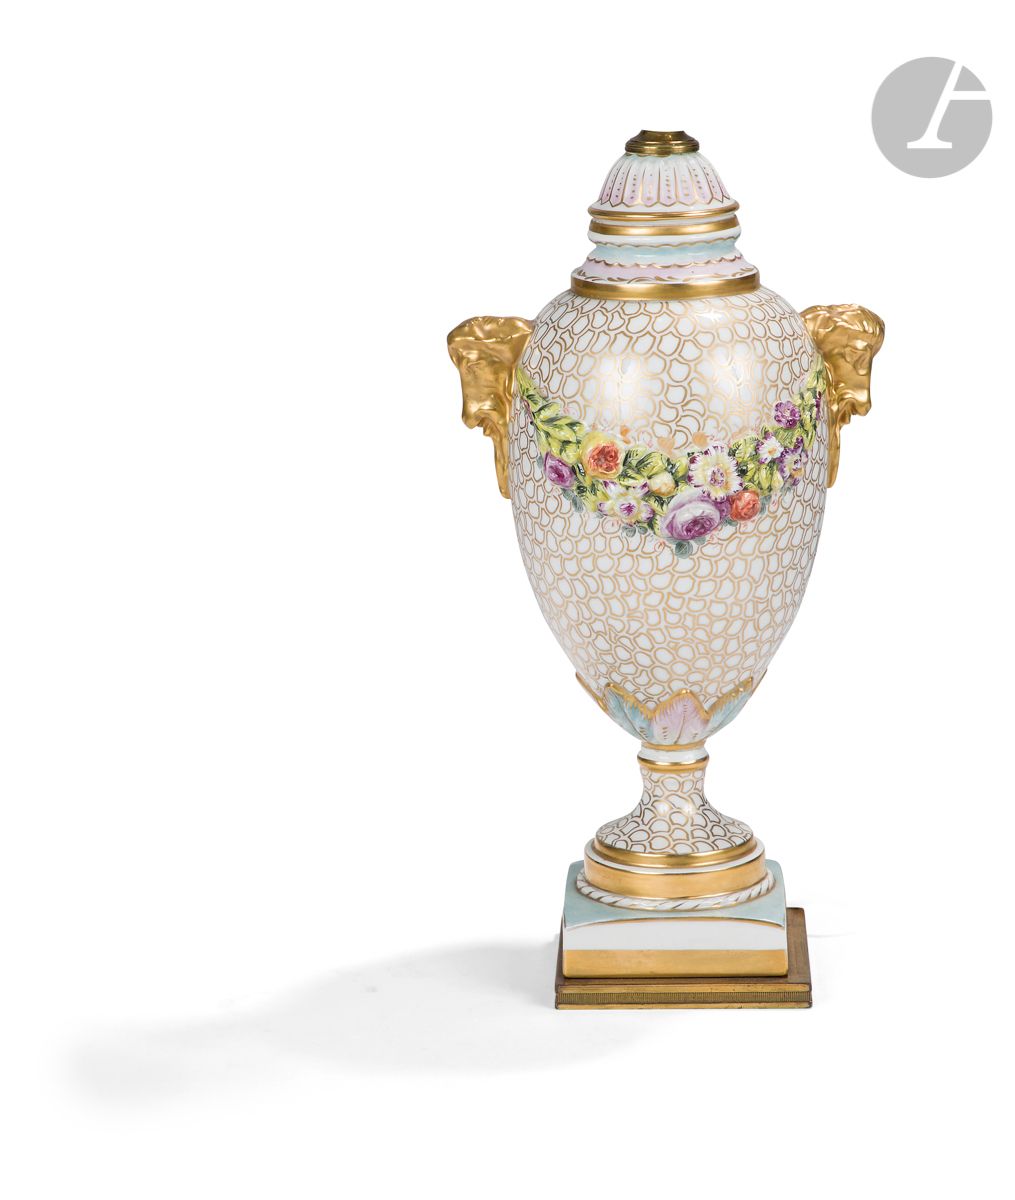 Null 巴黎
瓷器覆盖的柱形花瓶，手柄为金色背景的公羊头形状，金色卵石背景上有多色和浮雕的花环装饰。
20世纪。
高度：38厘米
被安装成一盏灯。